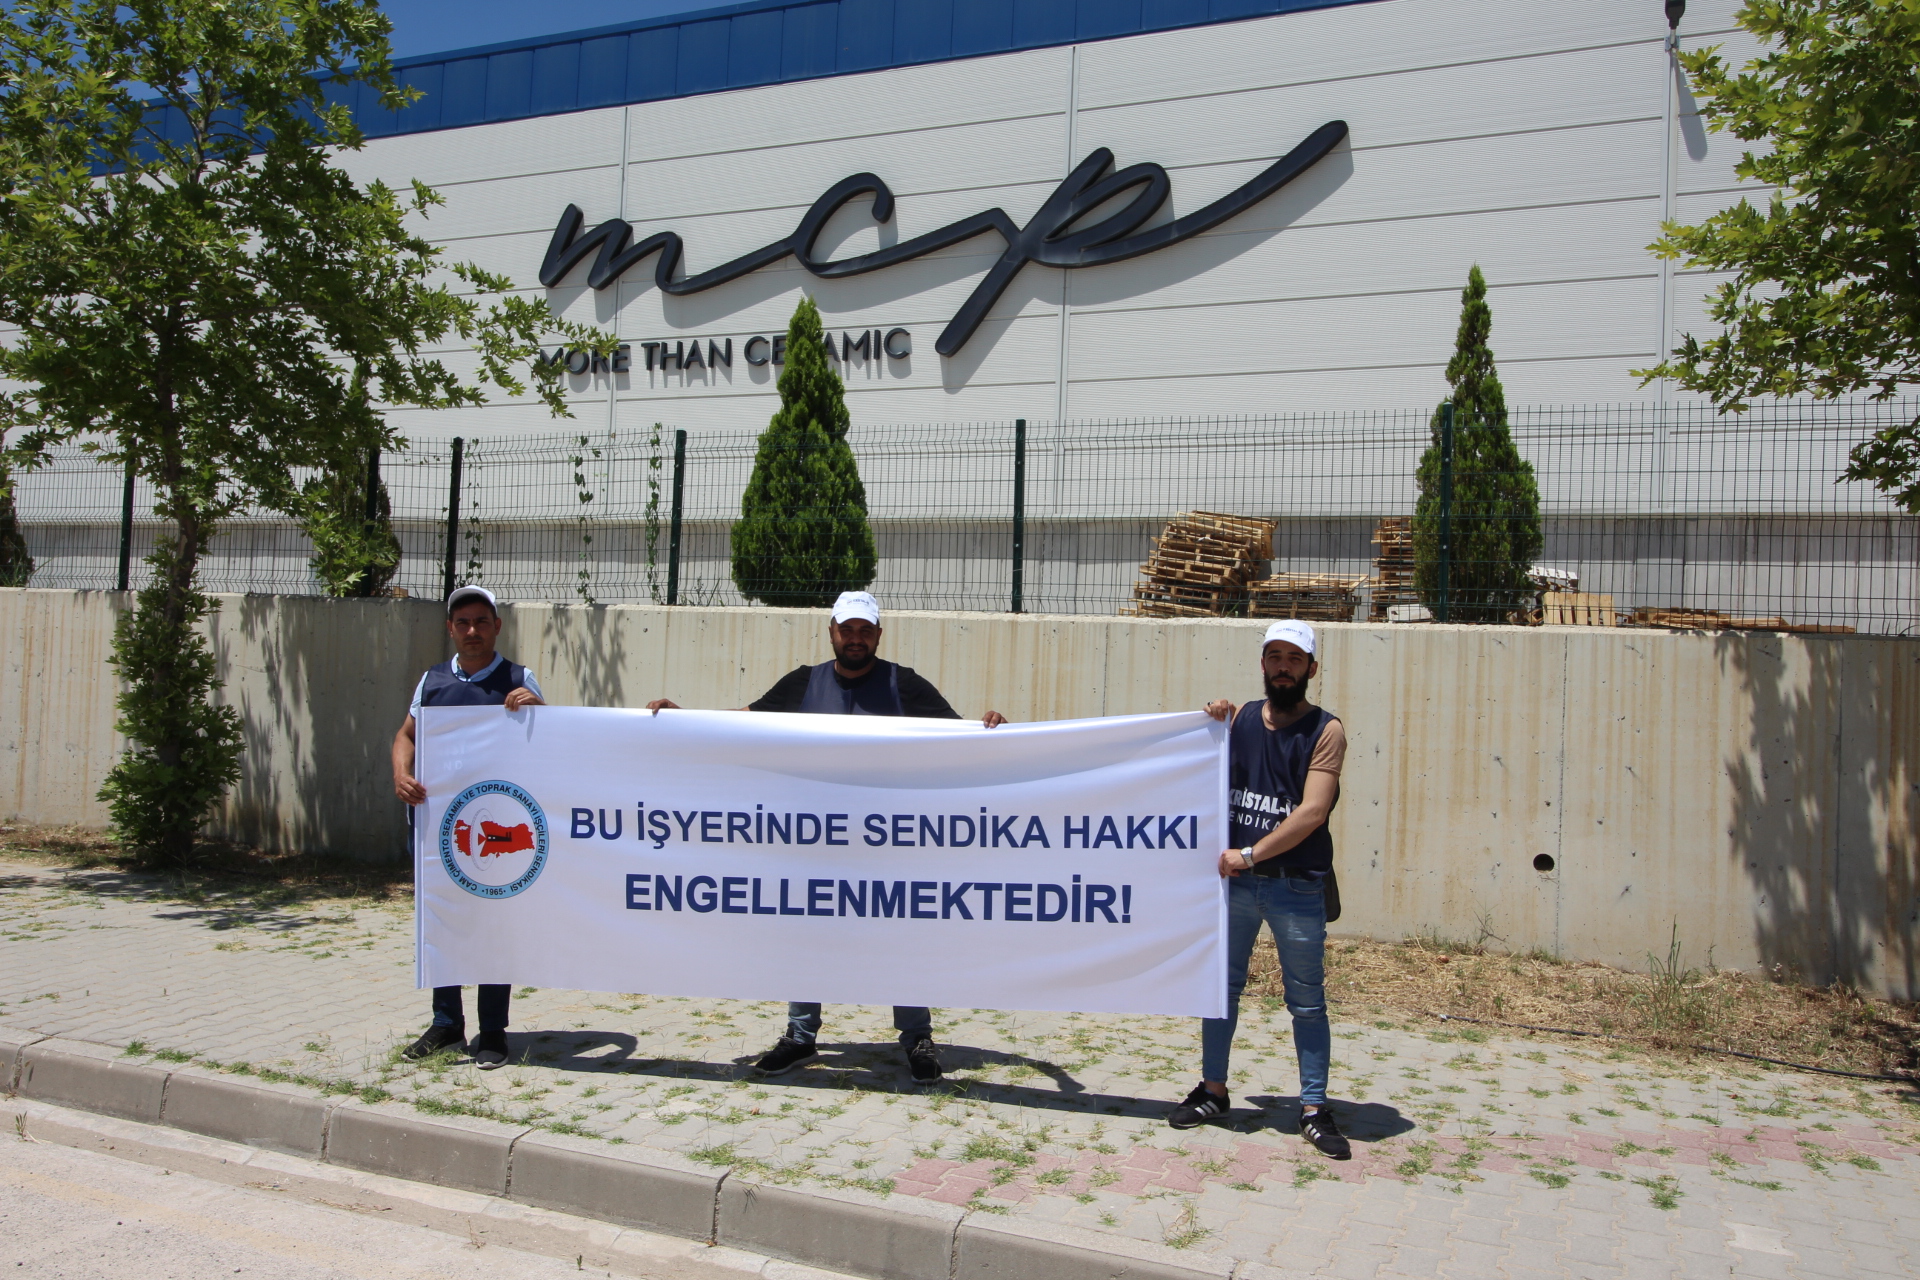 MCP Manisa Seramik Fabrikası’ndaki antidemokratik uygulamalara karşı basın açıklamamızı gerçekleştirdik